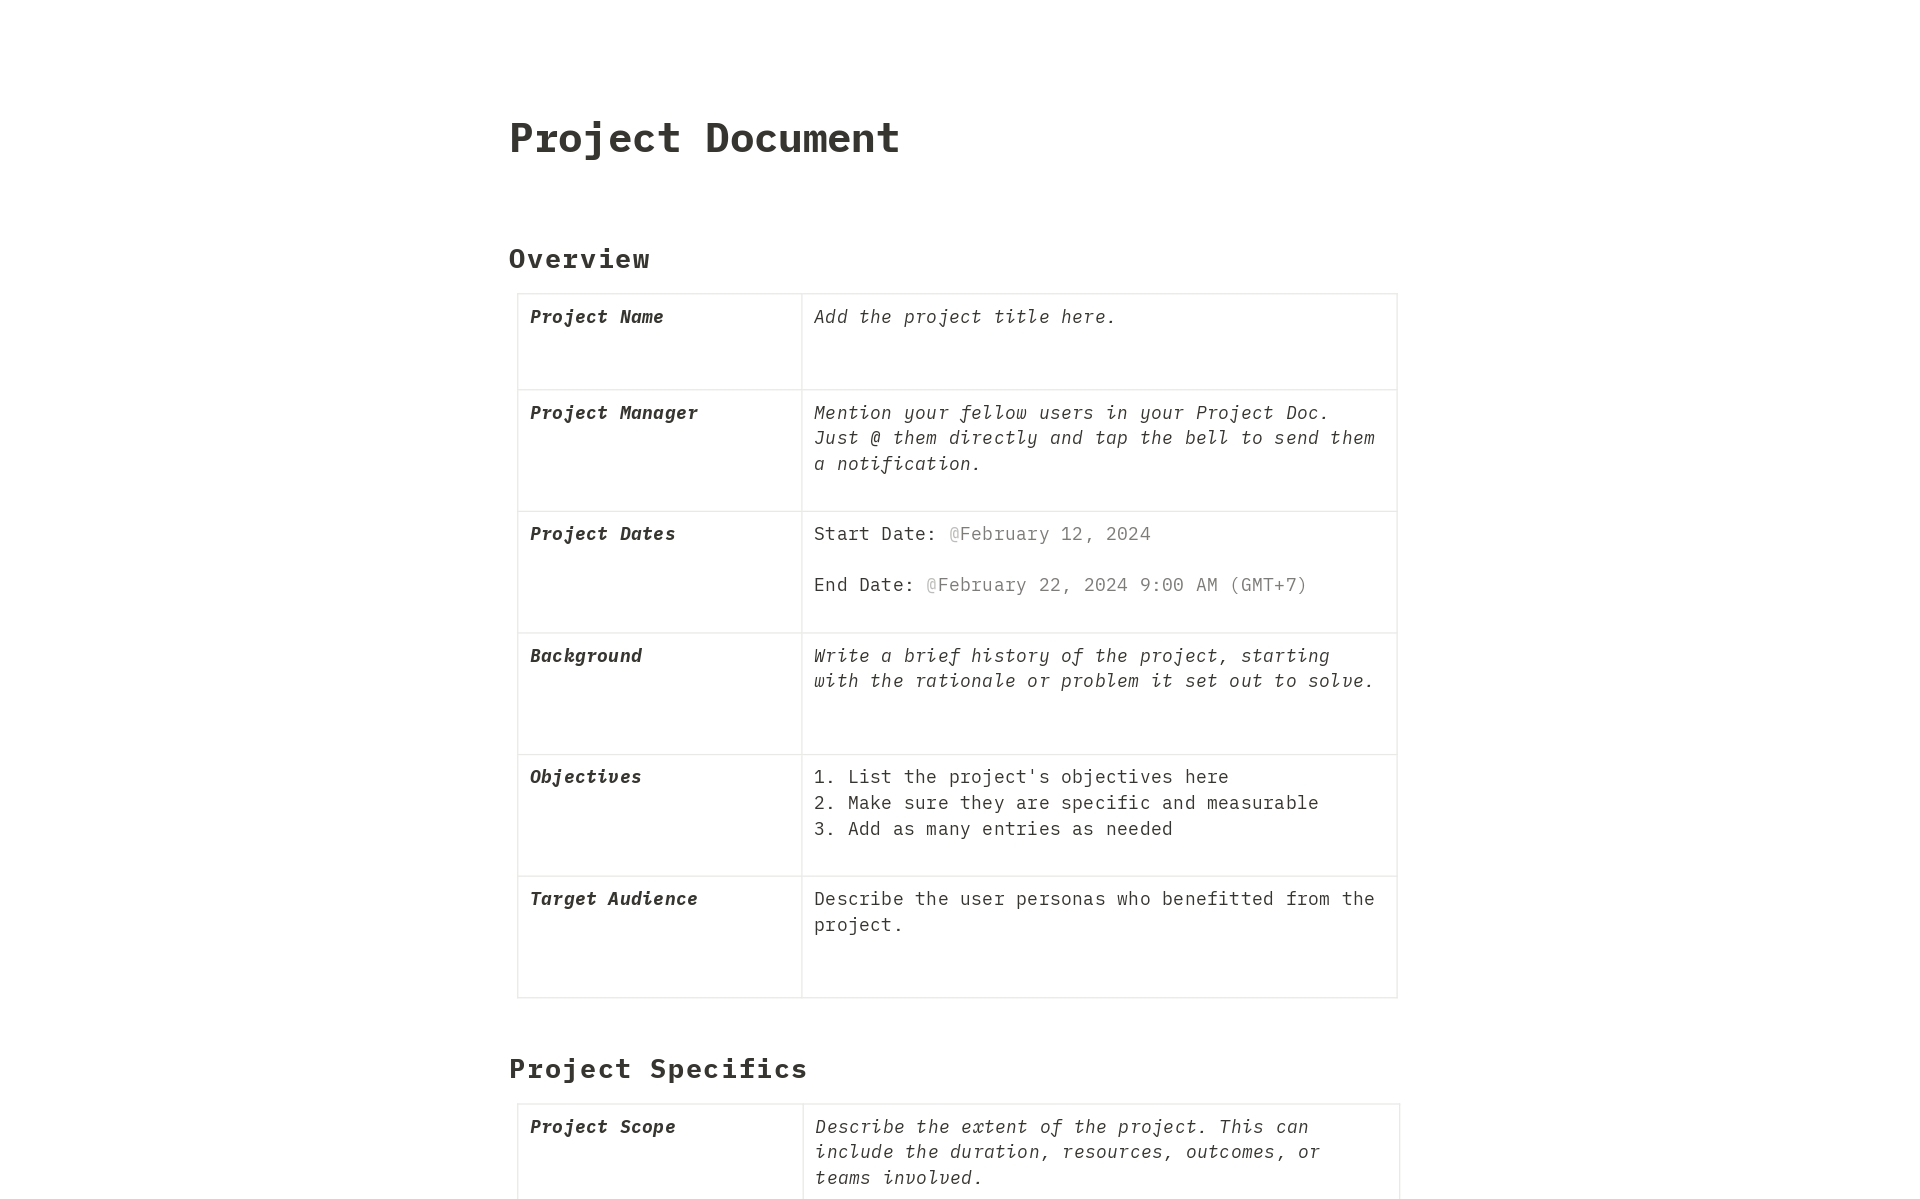 Aperçu du modèle de Project Document